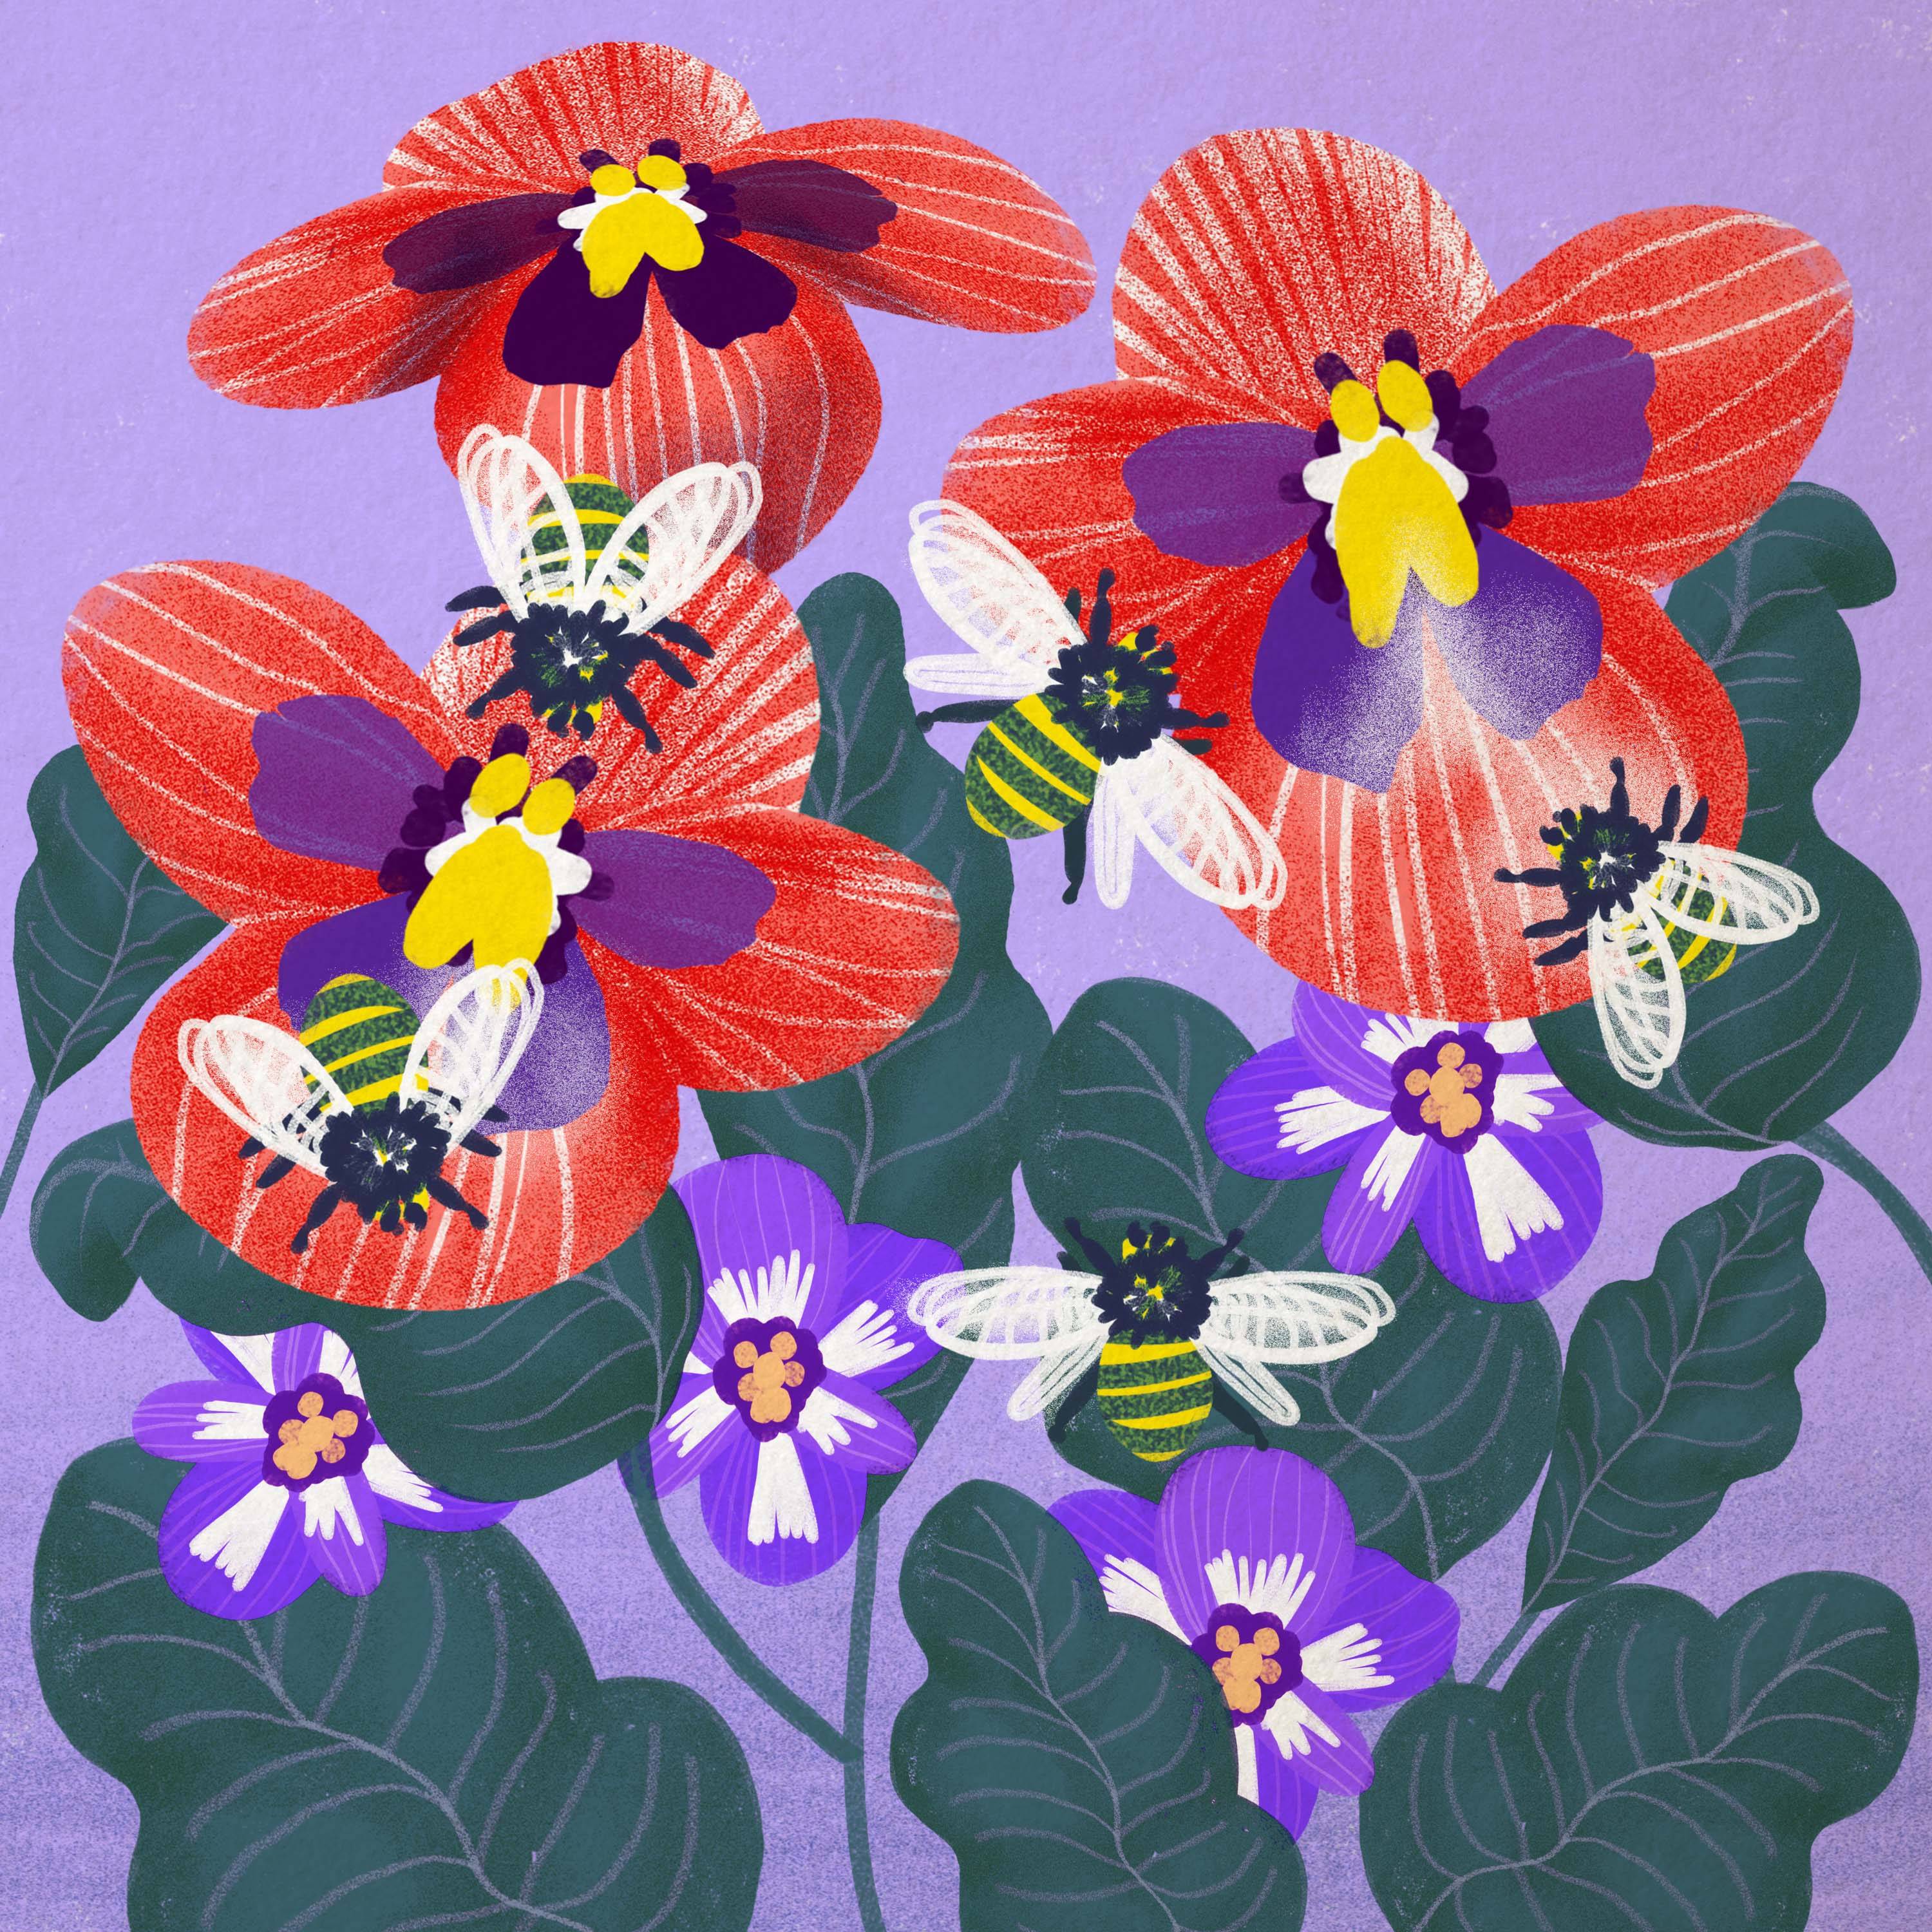 Rysunek przedstawia kolorowe kwiaty